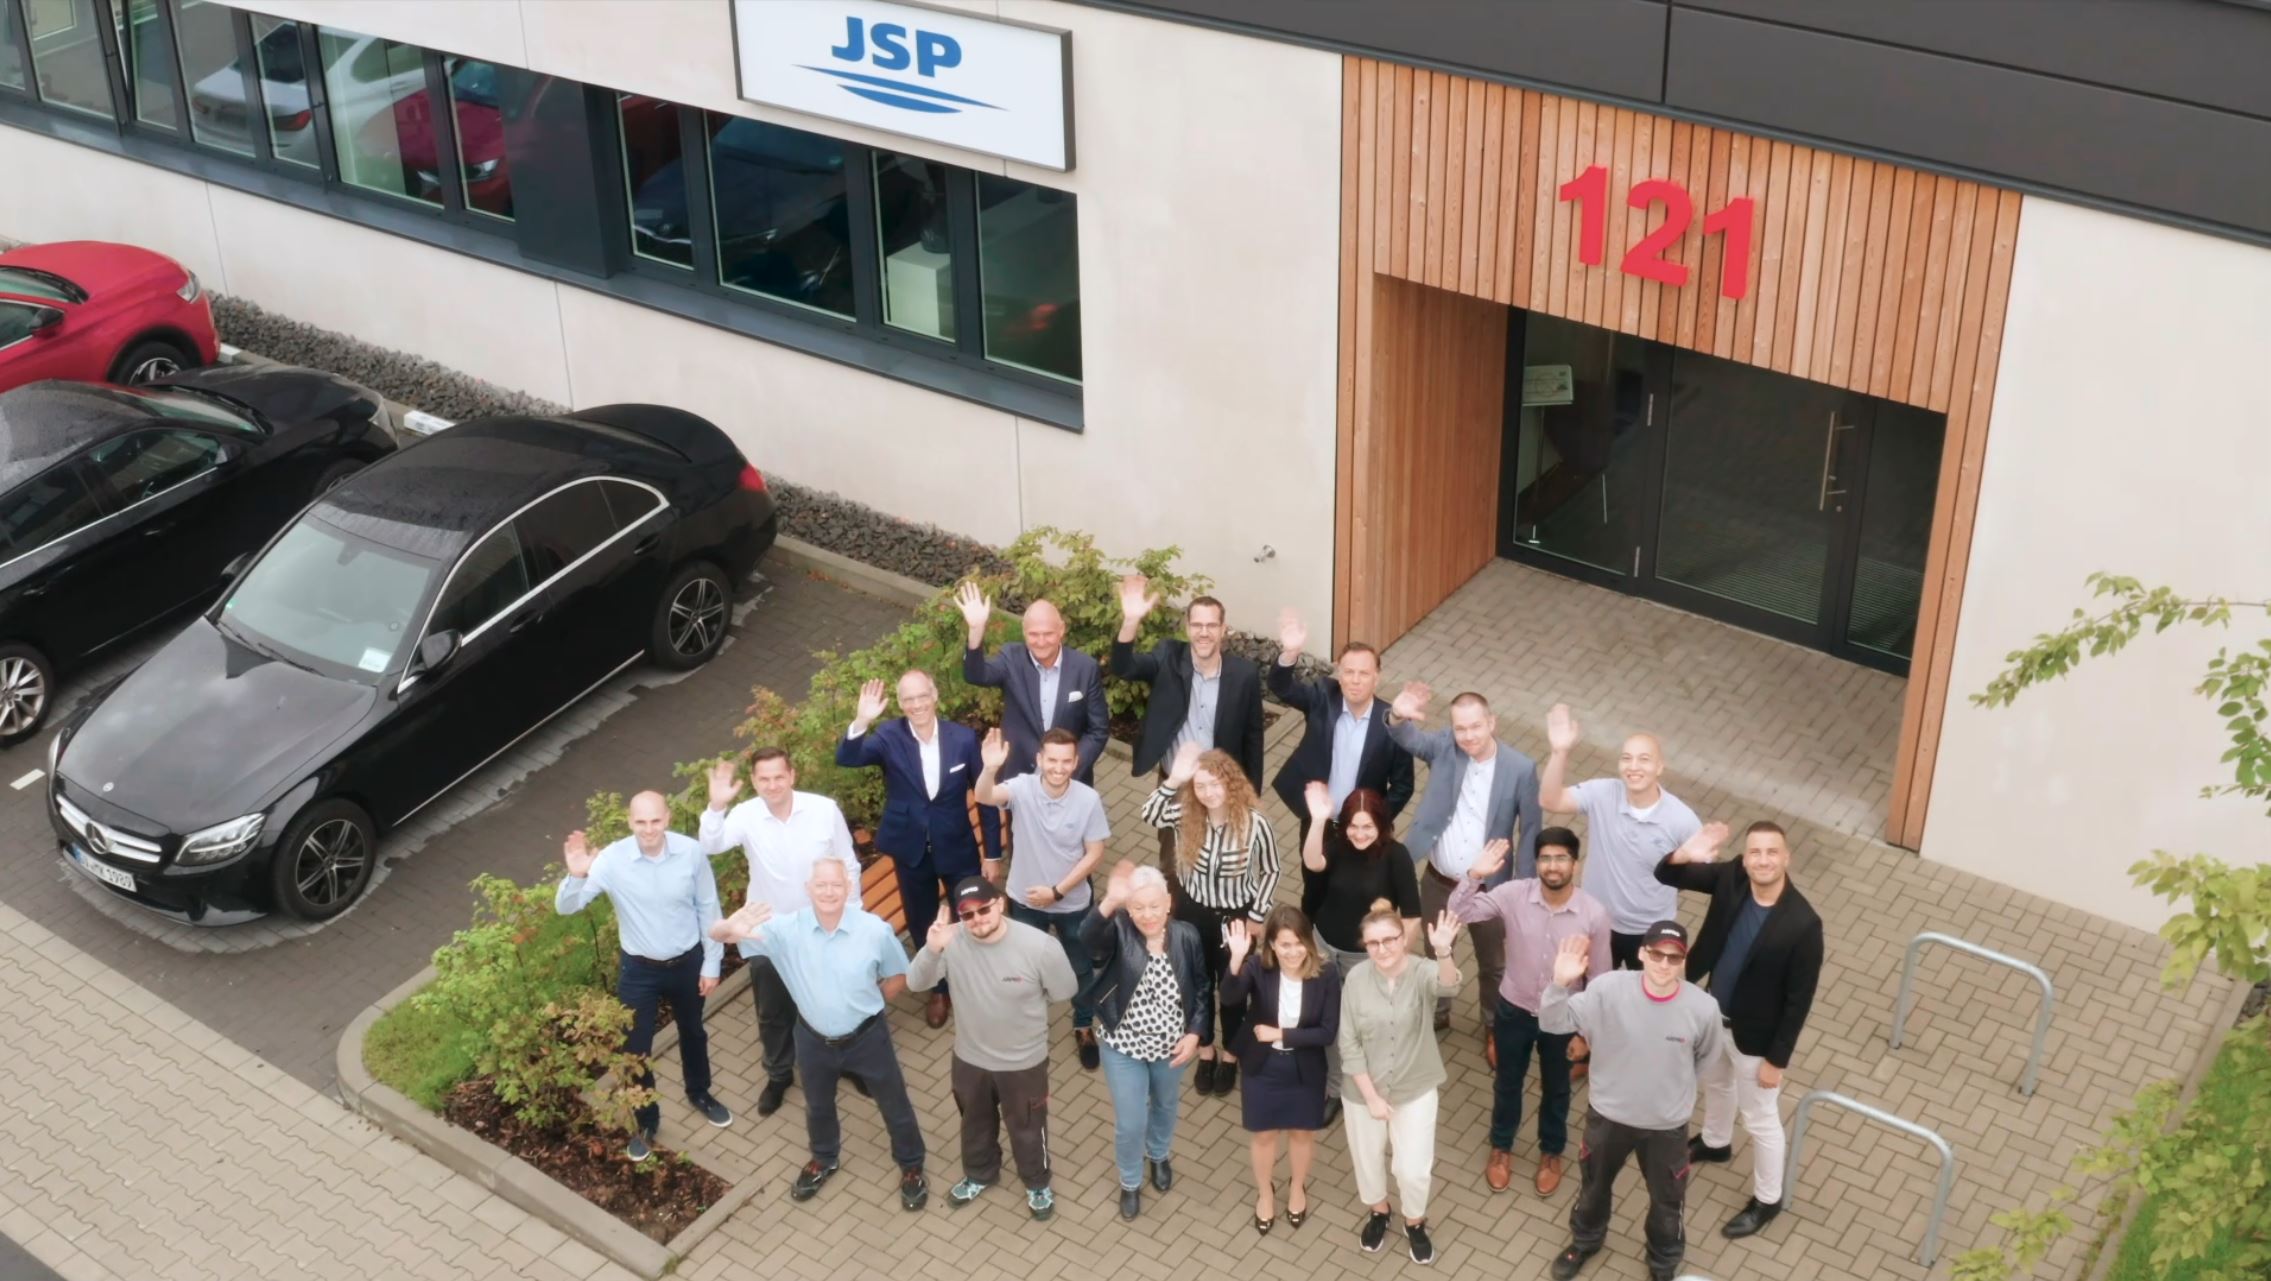 JSP’s Innovation Centre in Dusseldorf 